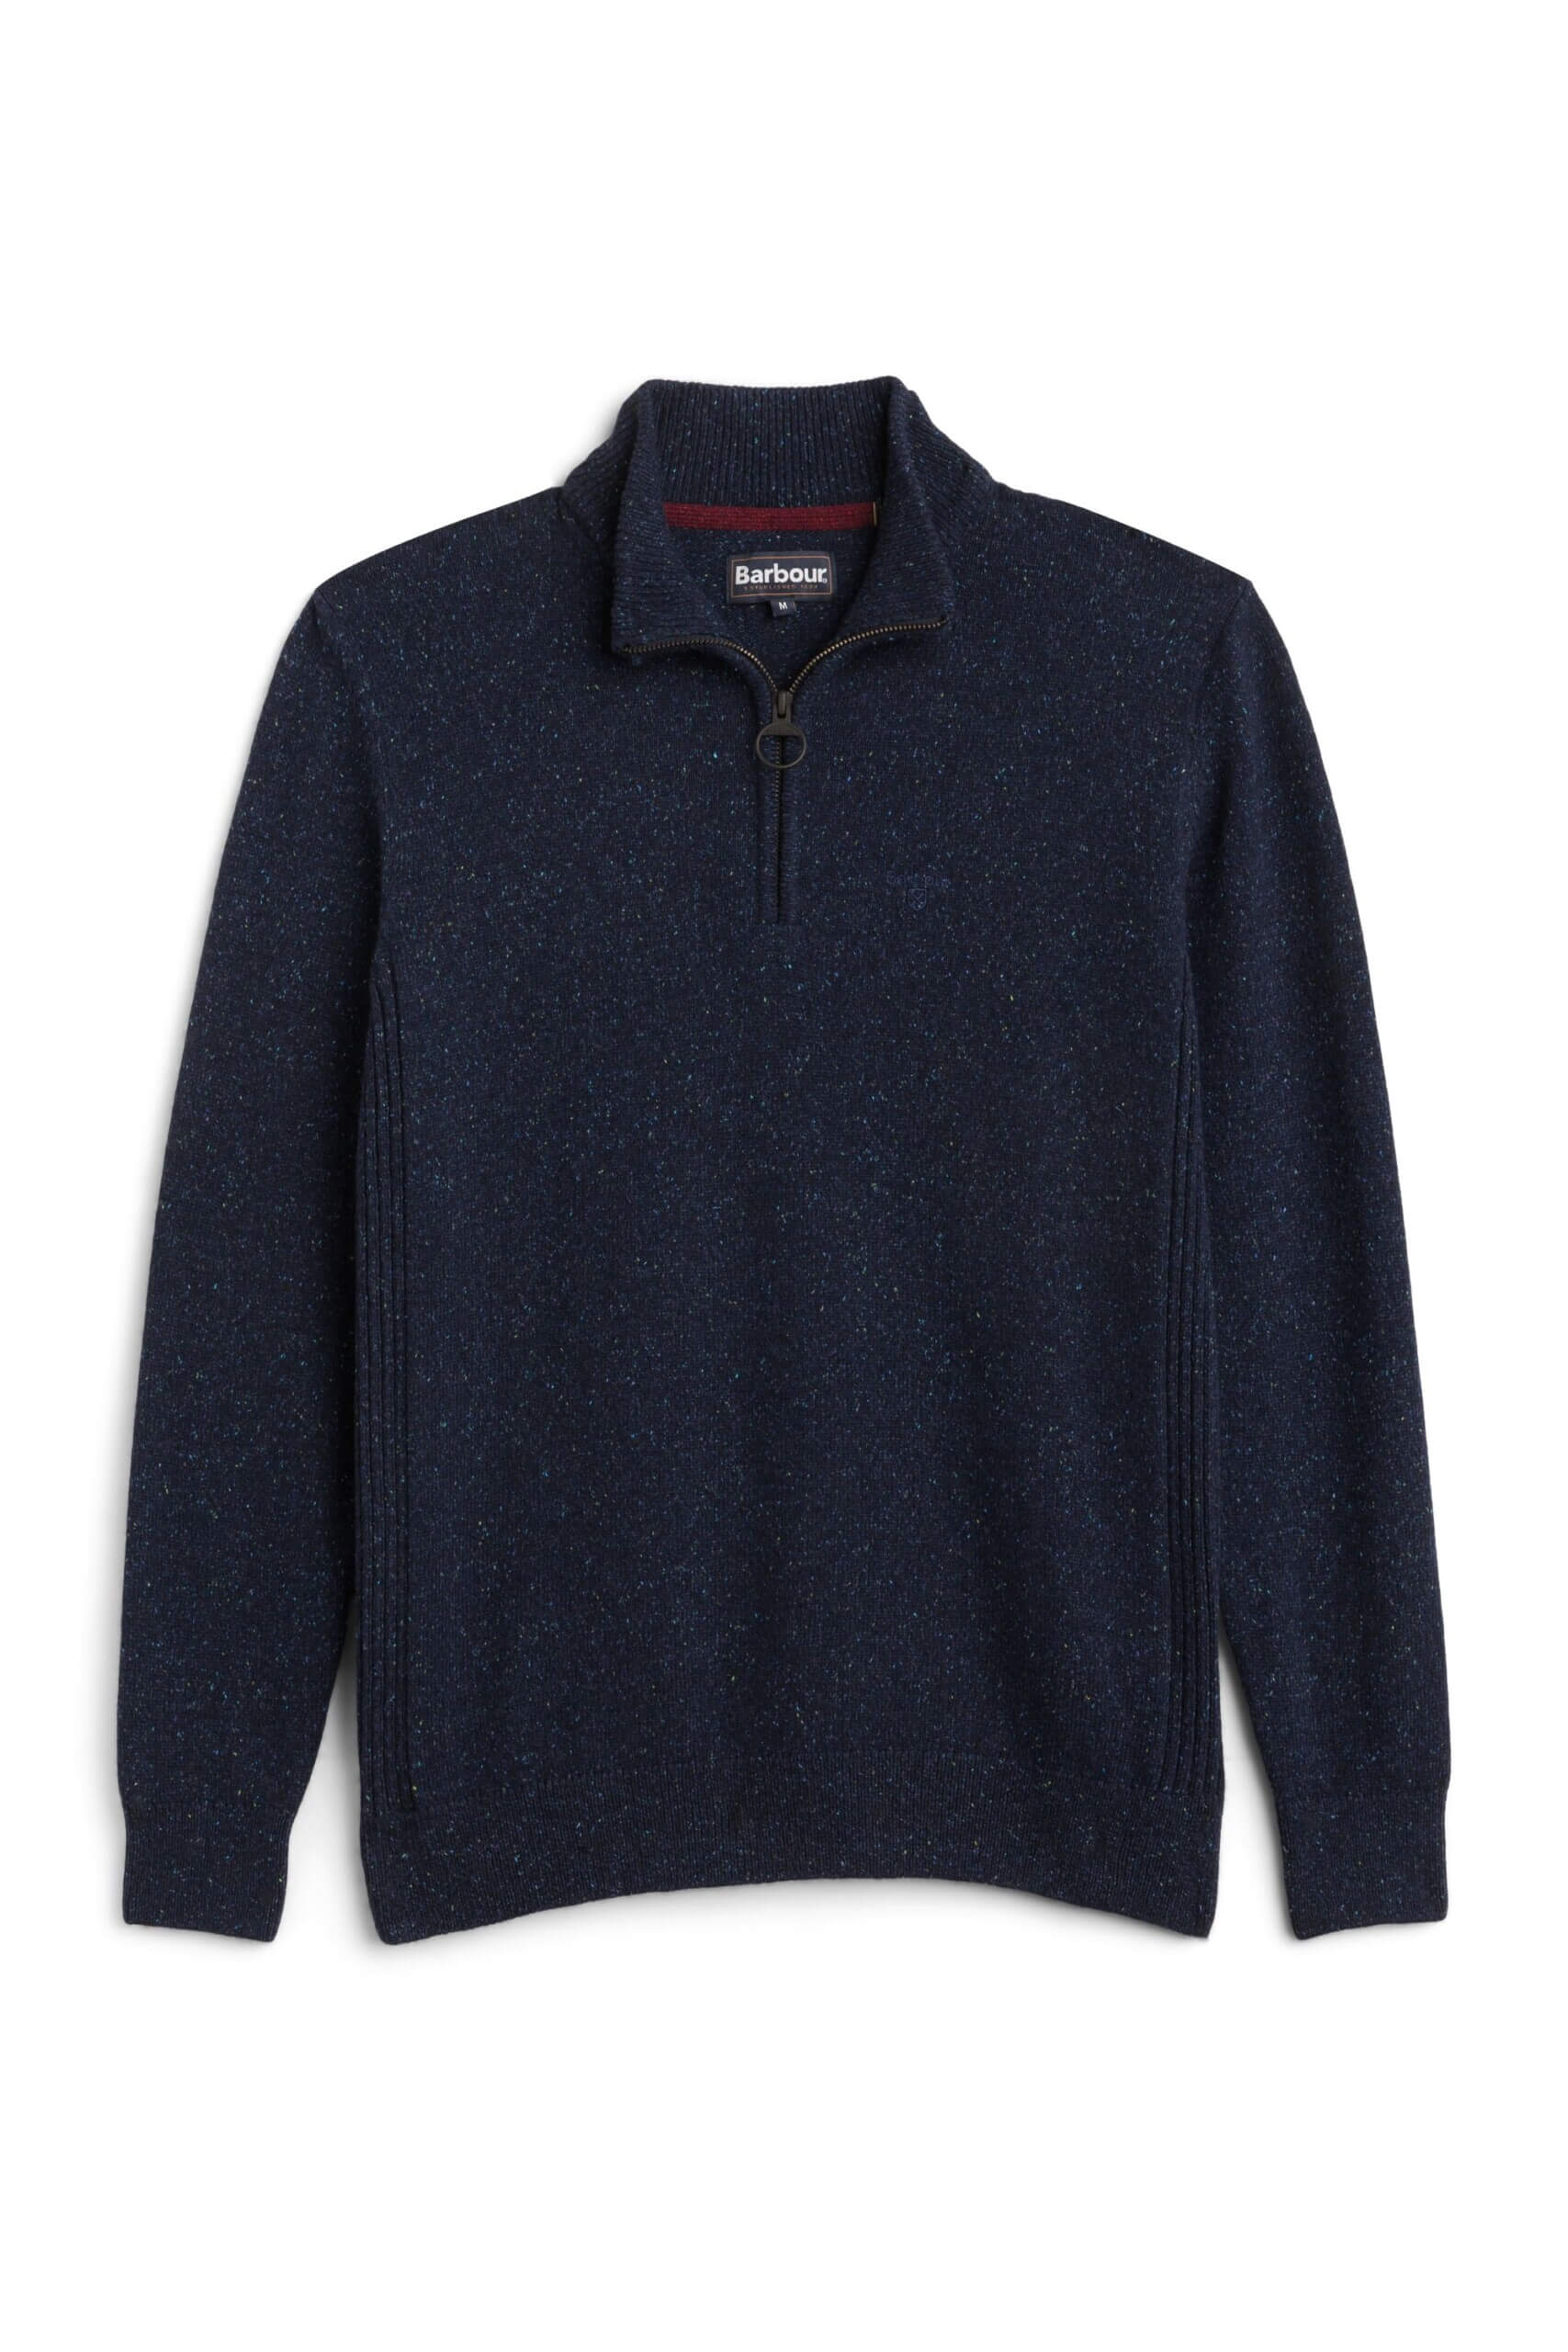 Stitch Fix men's quarter-zip pullover sweater. 